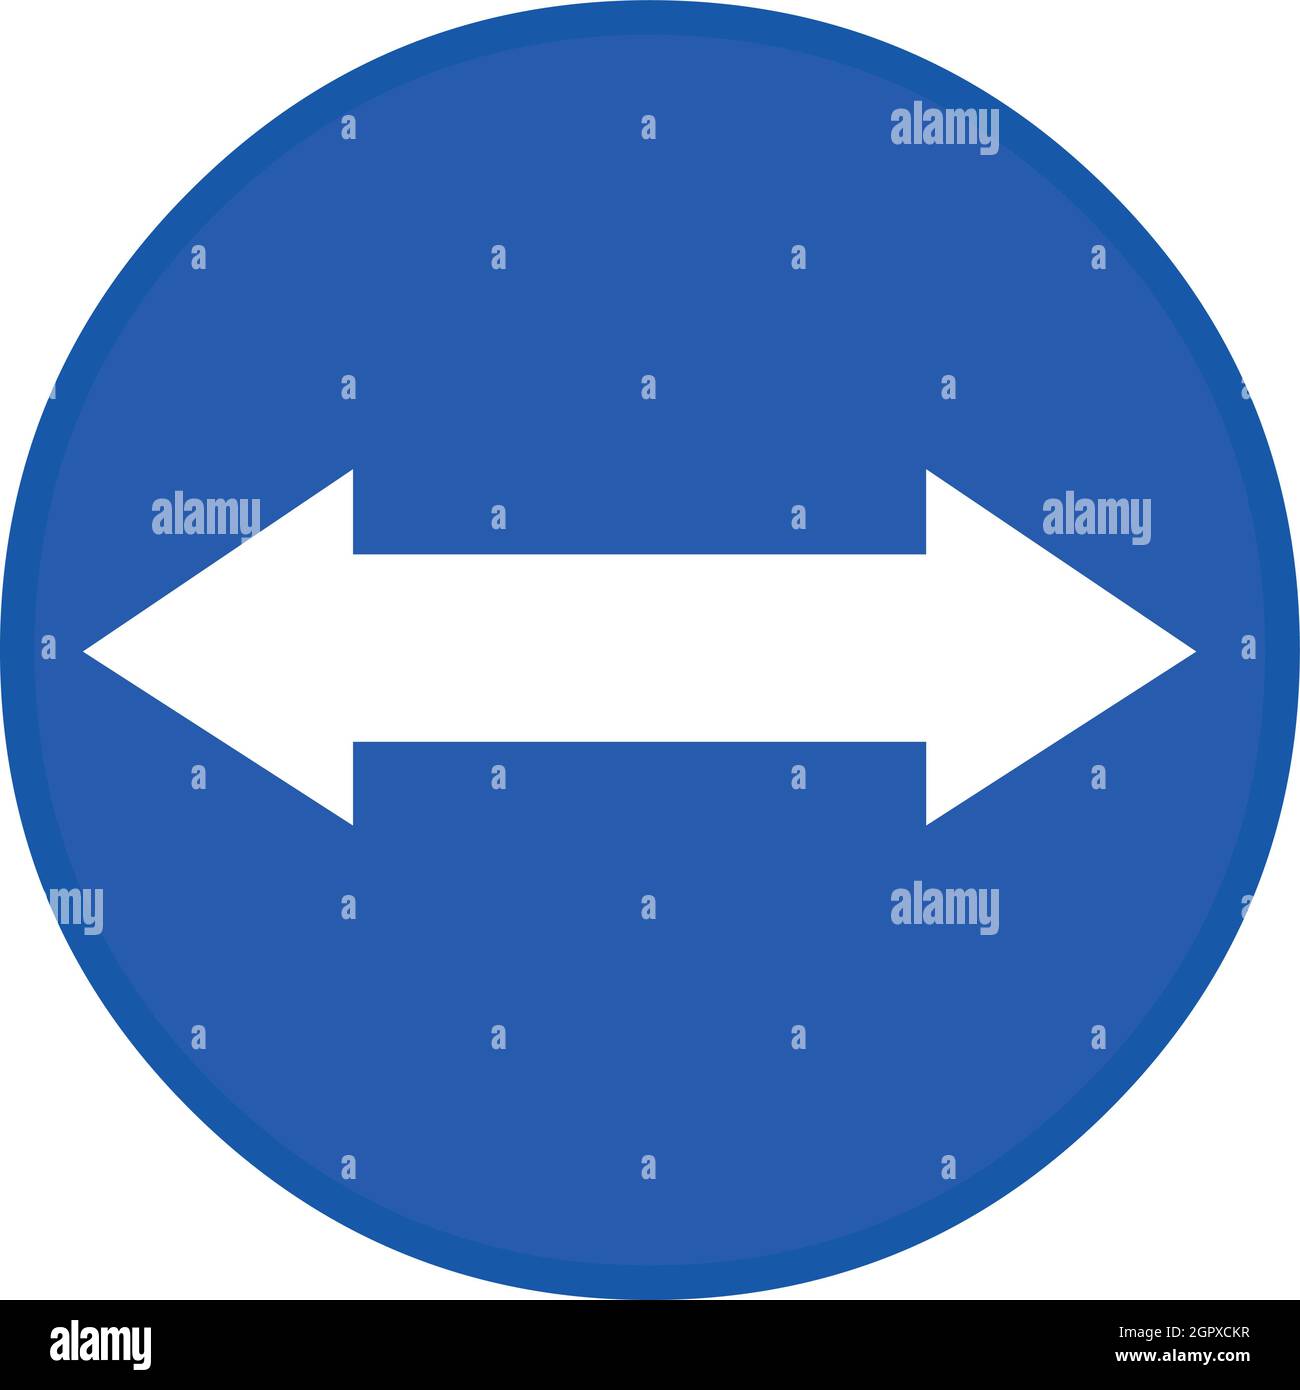 Vektor-Illustration von weißem Pfeil Verkehrszeichen mit zwei Möglichkeiten auf einem blauen kreisförmigen Hintergrund, was bedeutet, zwei Möglichkeiten Stock Vektor